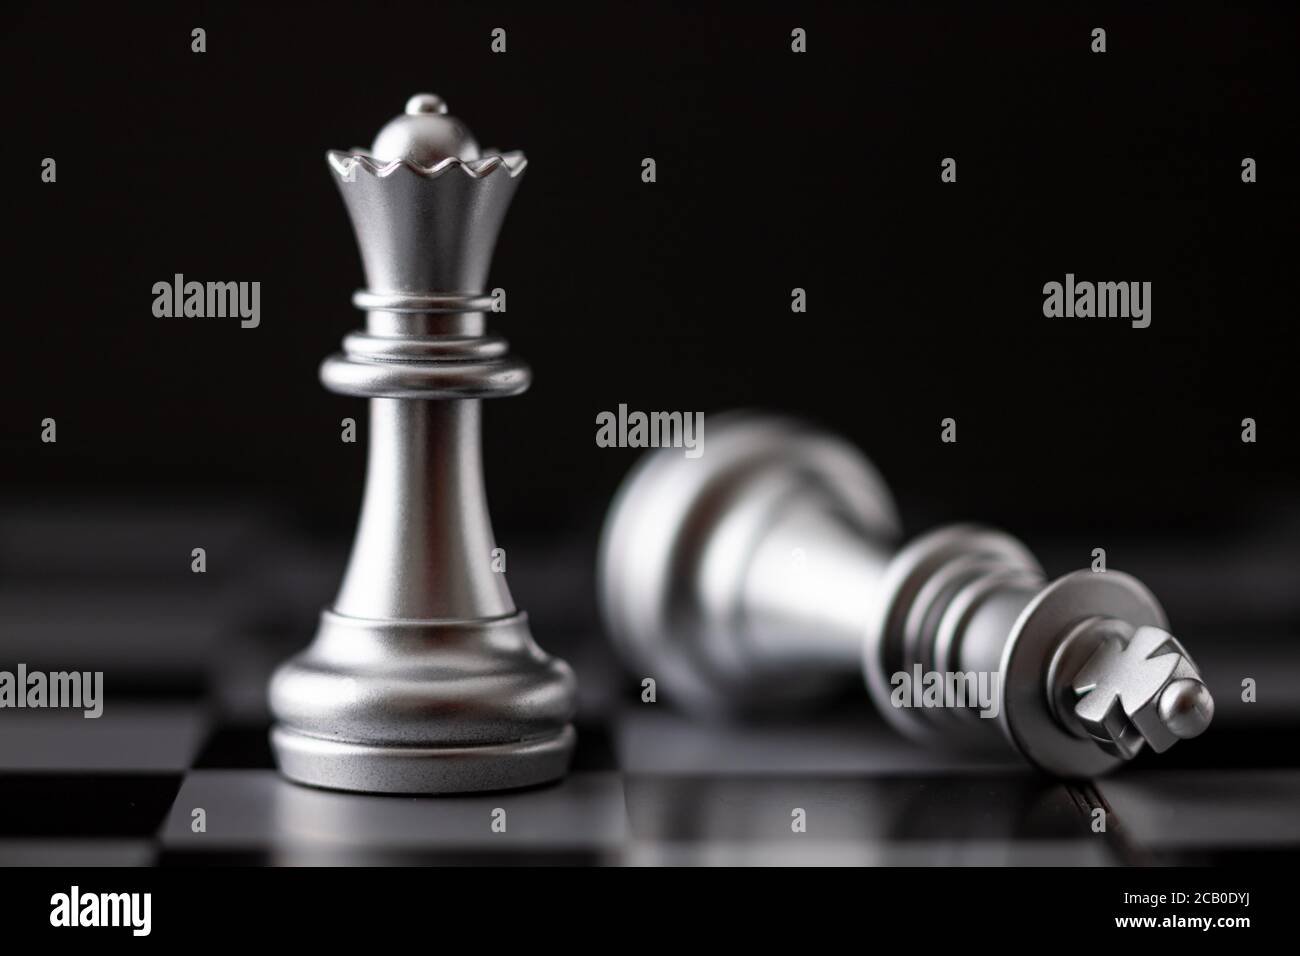 La regina d'argento in piedi e il re che cade in gioco sulla scacchiera Foto Stock